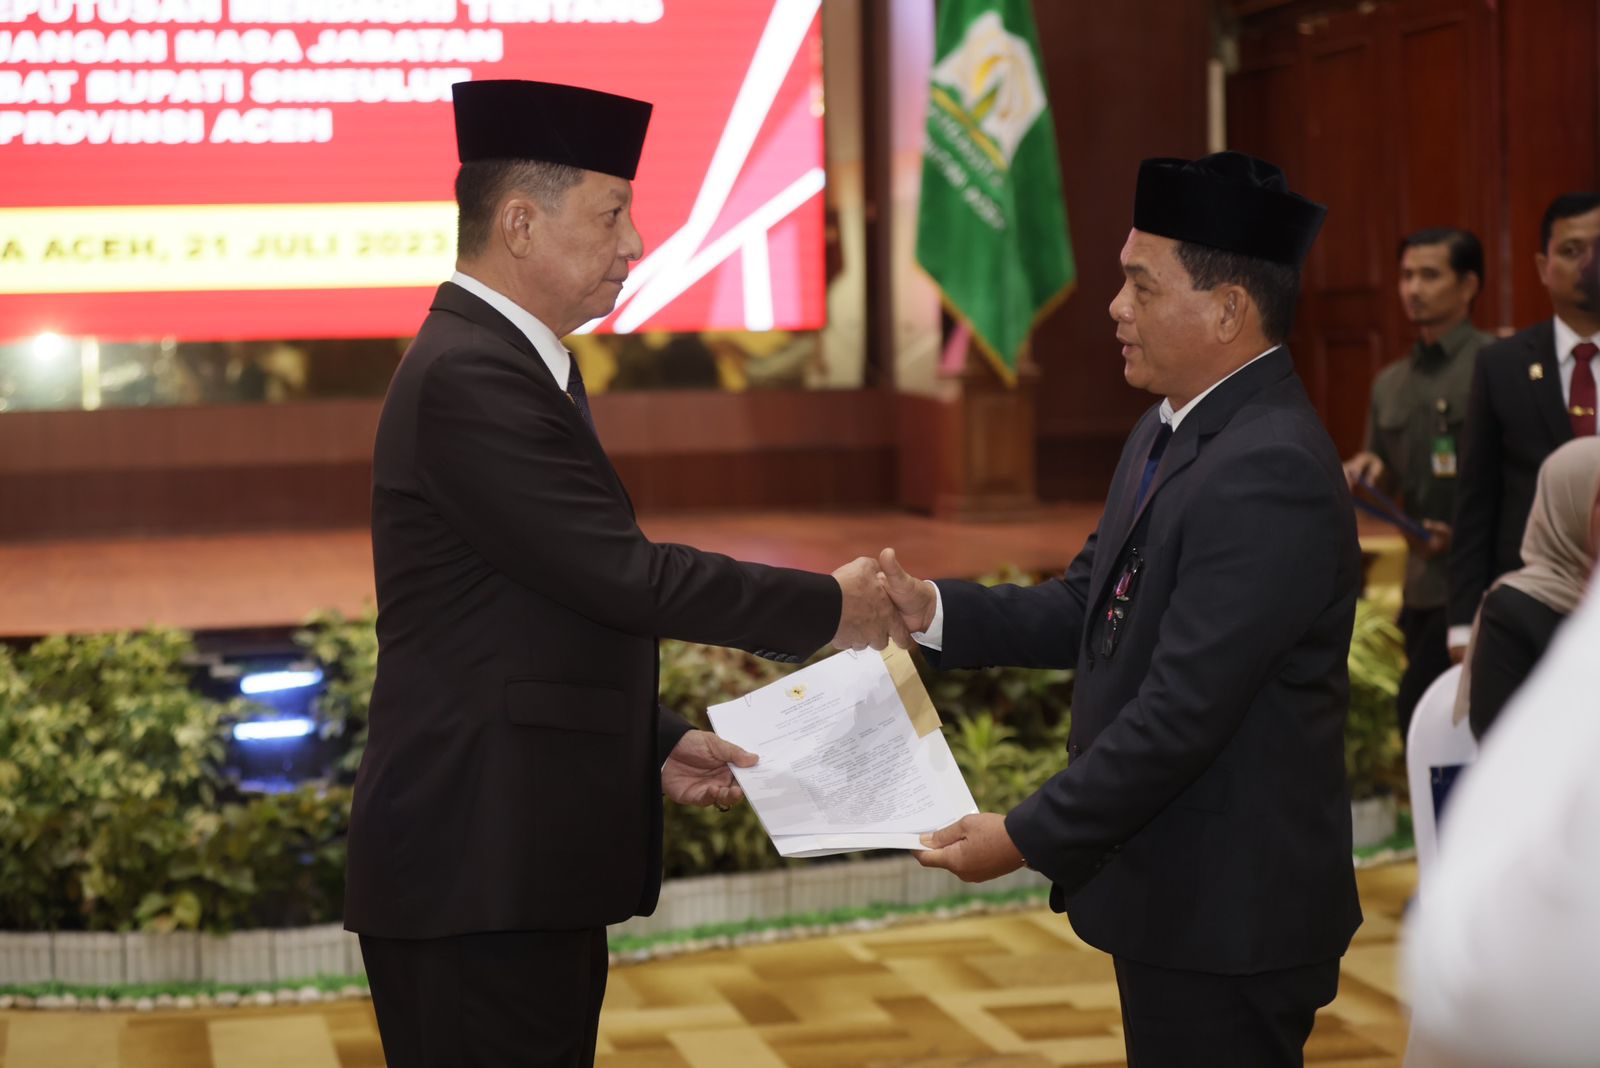 Pj. Gubernur Aceh, Achmad Marzuki menyerahkan SK Perpanjangan kepada Pj. Bupati Simeulue Ahmadliyah. Jumat (21/7) sore. Foto:Rahmad.